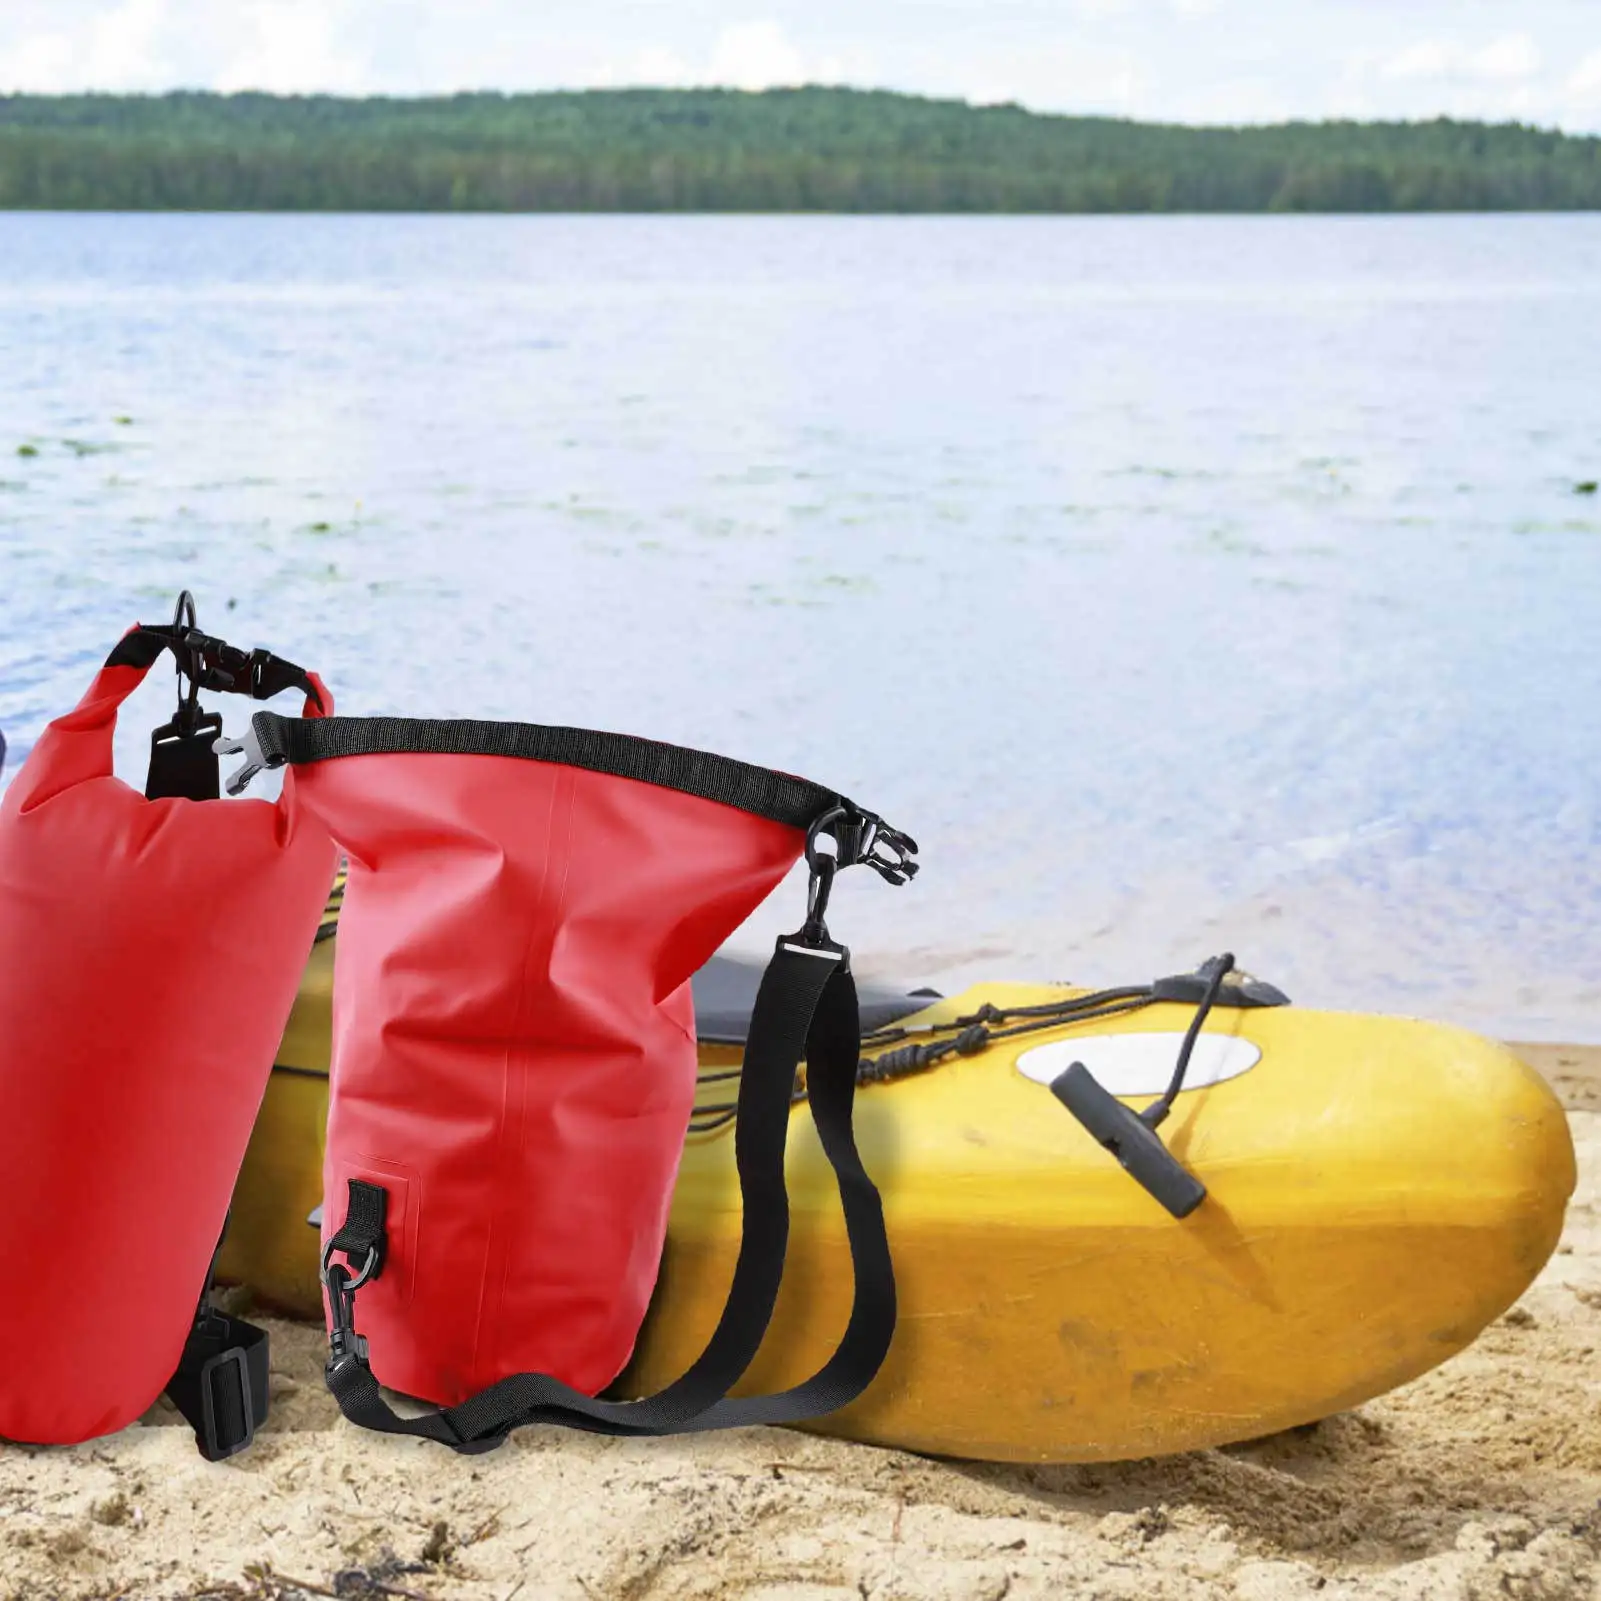 Водонепроницаемый Сухой Мешок С Плавающим Материалом Dry Bag для Плавания на Рафтинге